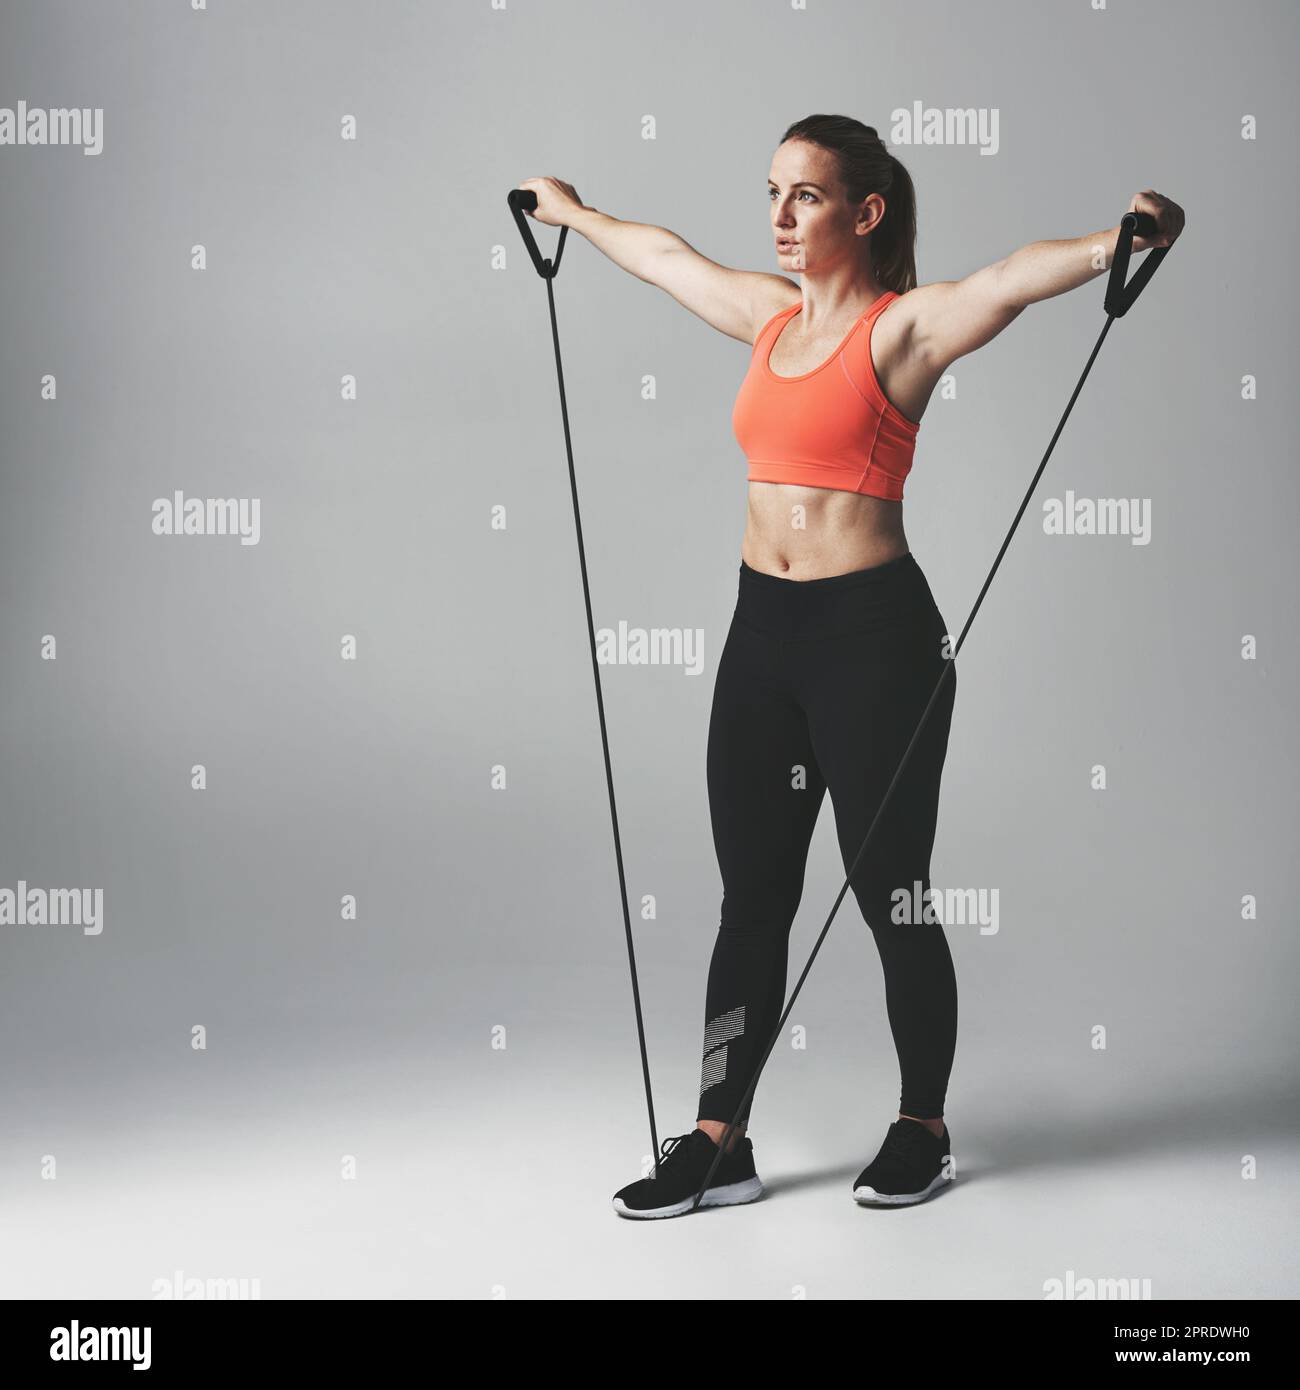 Krafttraining ist gut für den ganzen Körper. Studioaufnahme einer athletischen jungen Frau, die mit einem Widerstandsband vor grauem Hintergrund arbeitet. Stockfoto